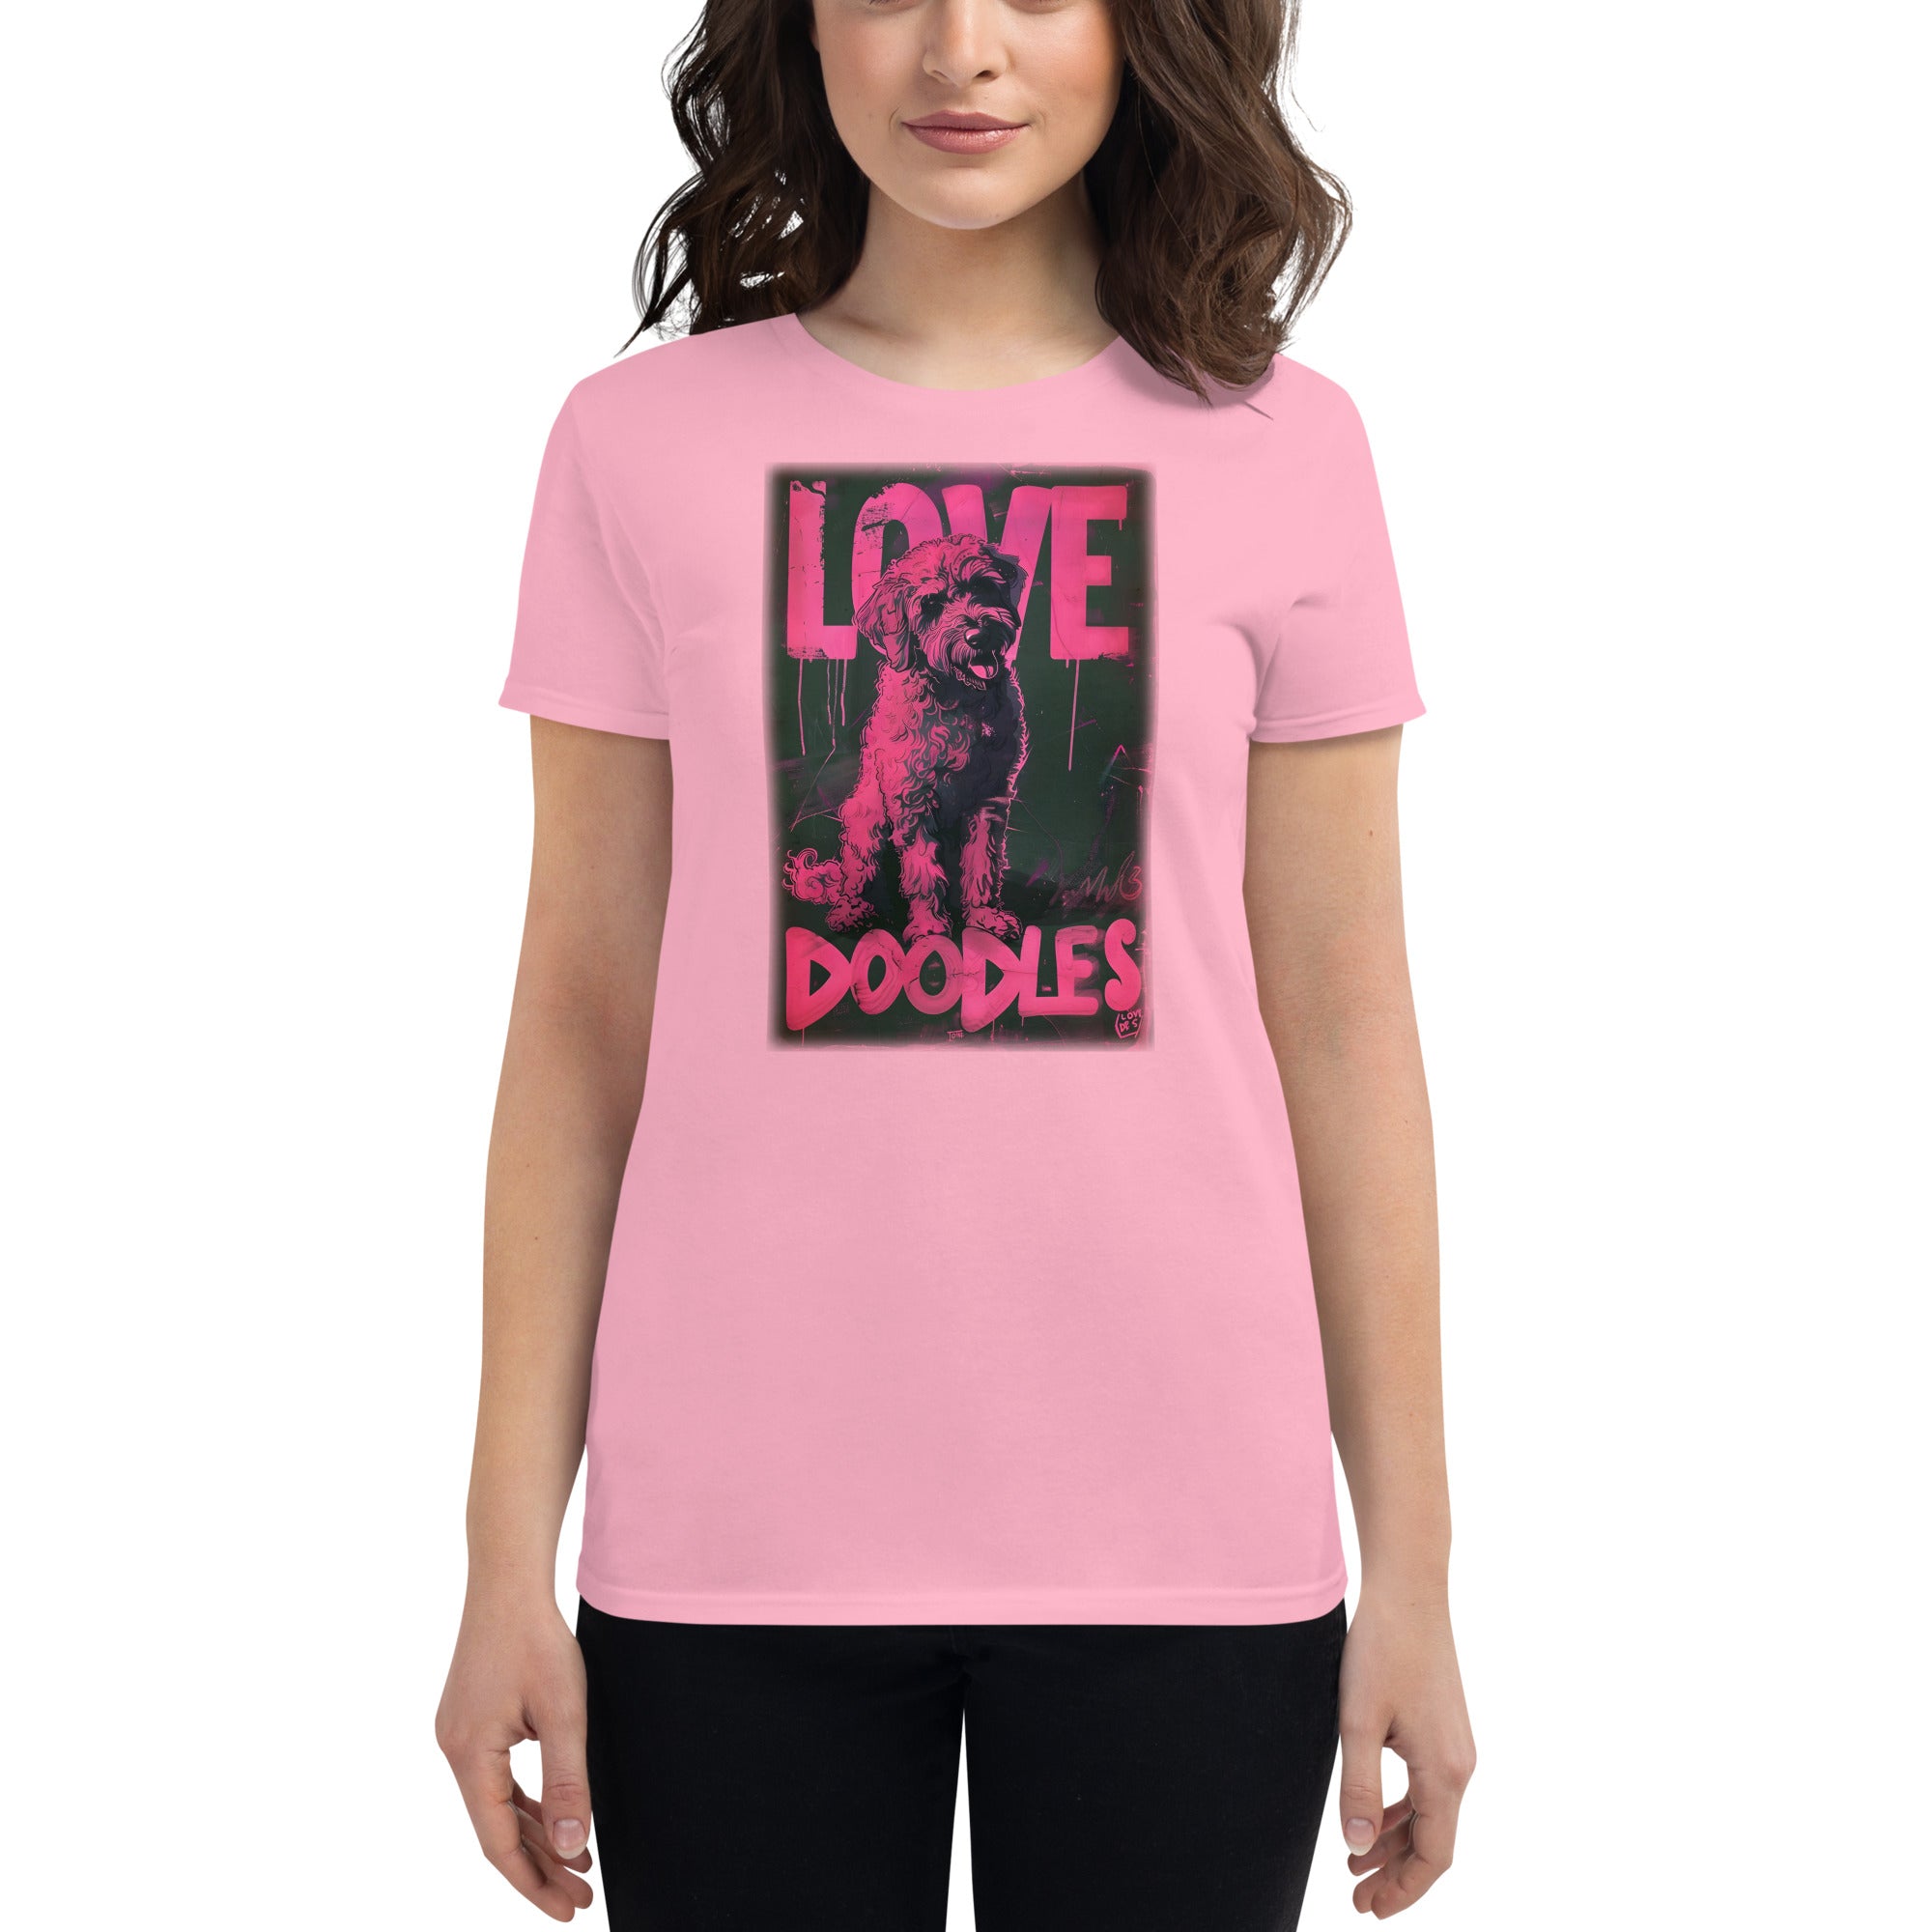 Labradoodles Women's short sleeve t-shirt